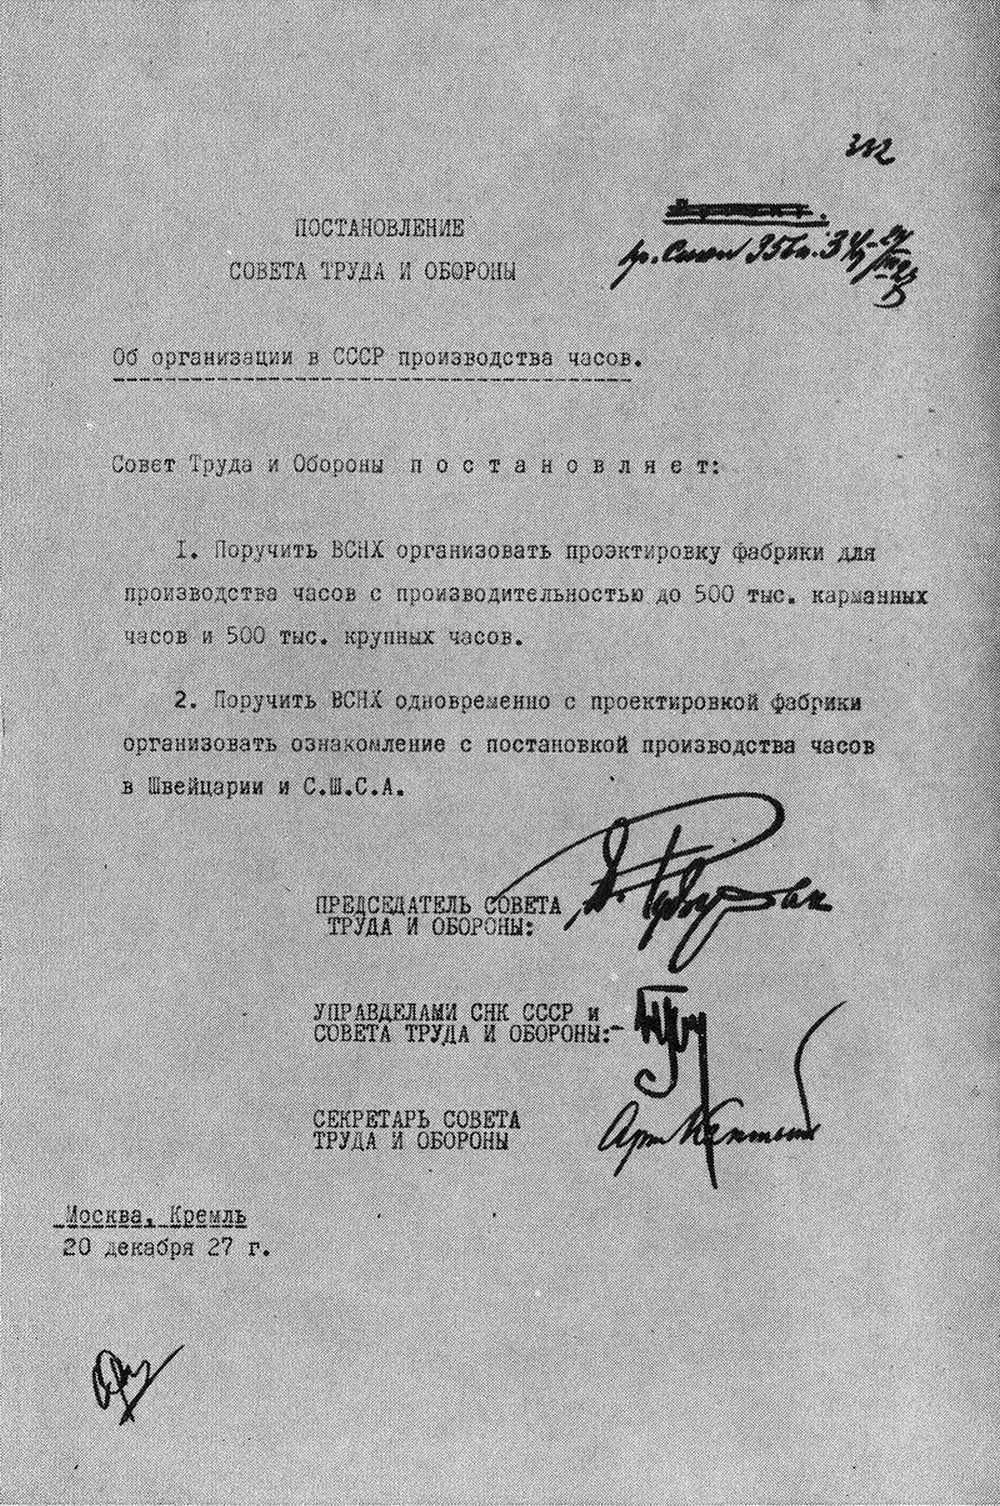 Постановление Совета труда и обороны об организации производства часов в СССР. 20 декабря 1927 года.